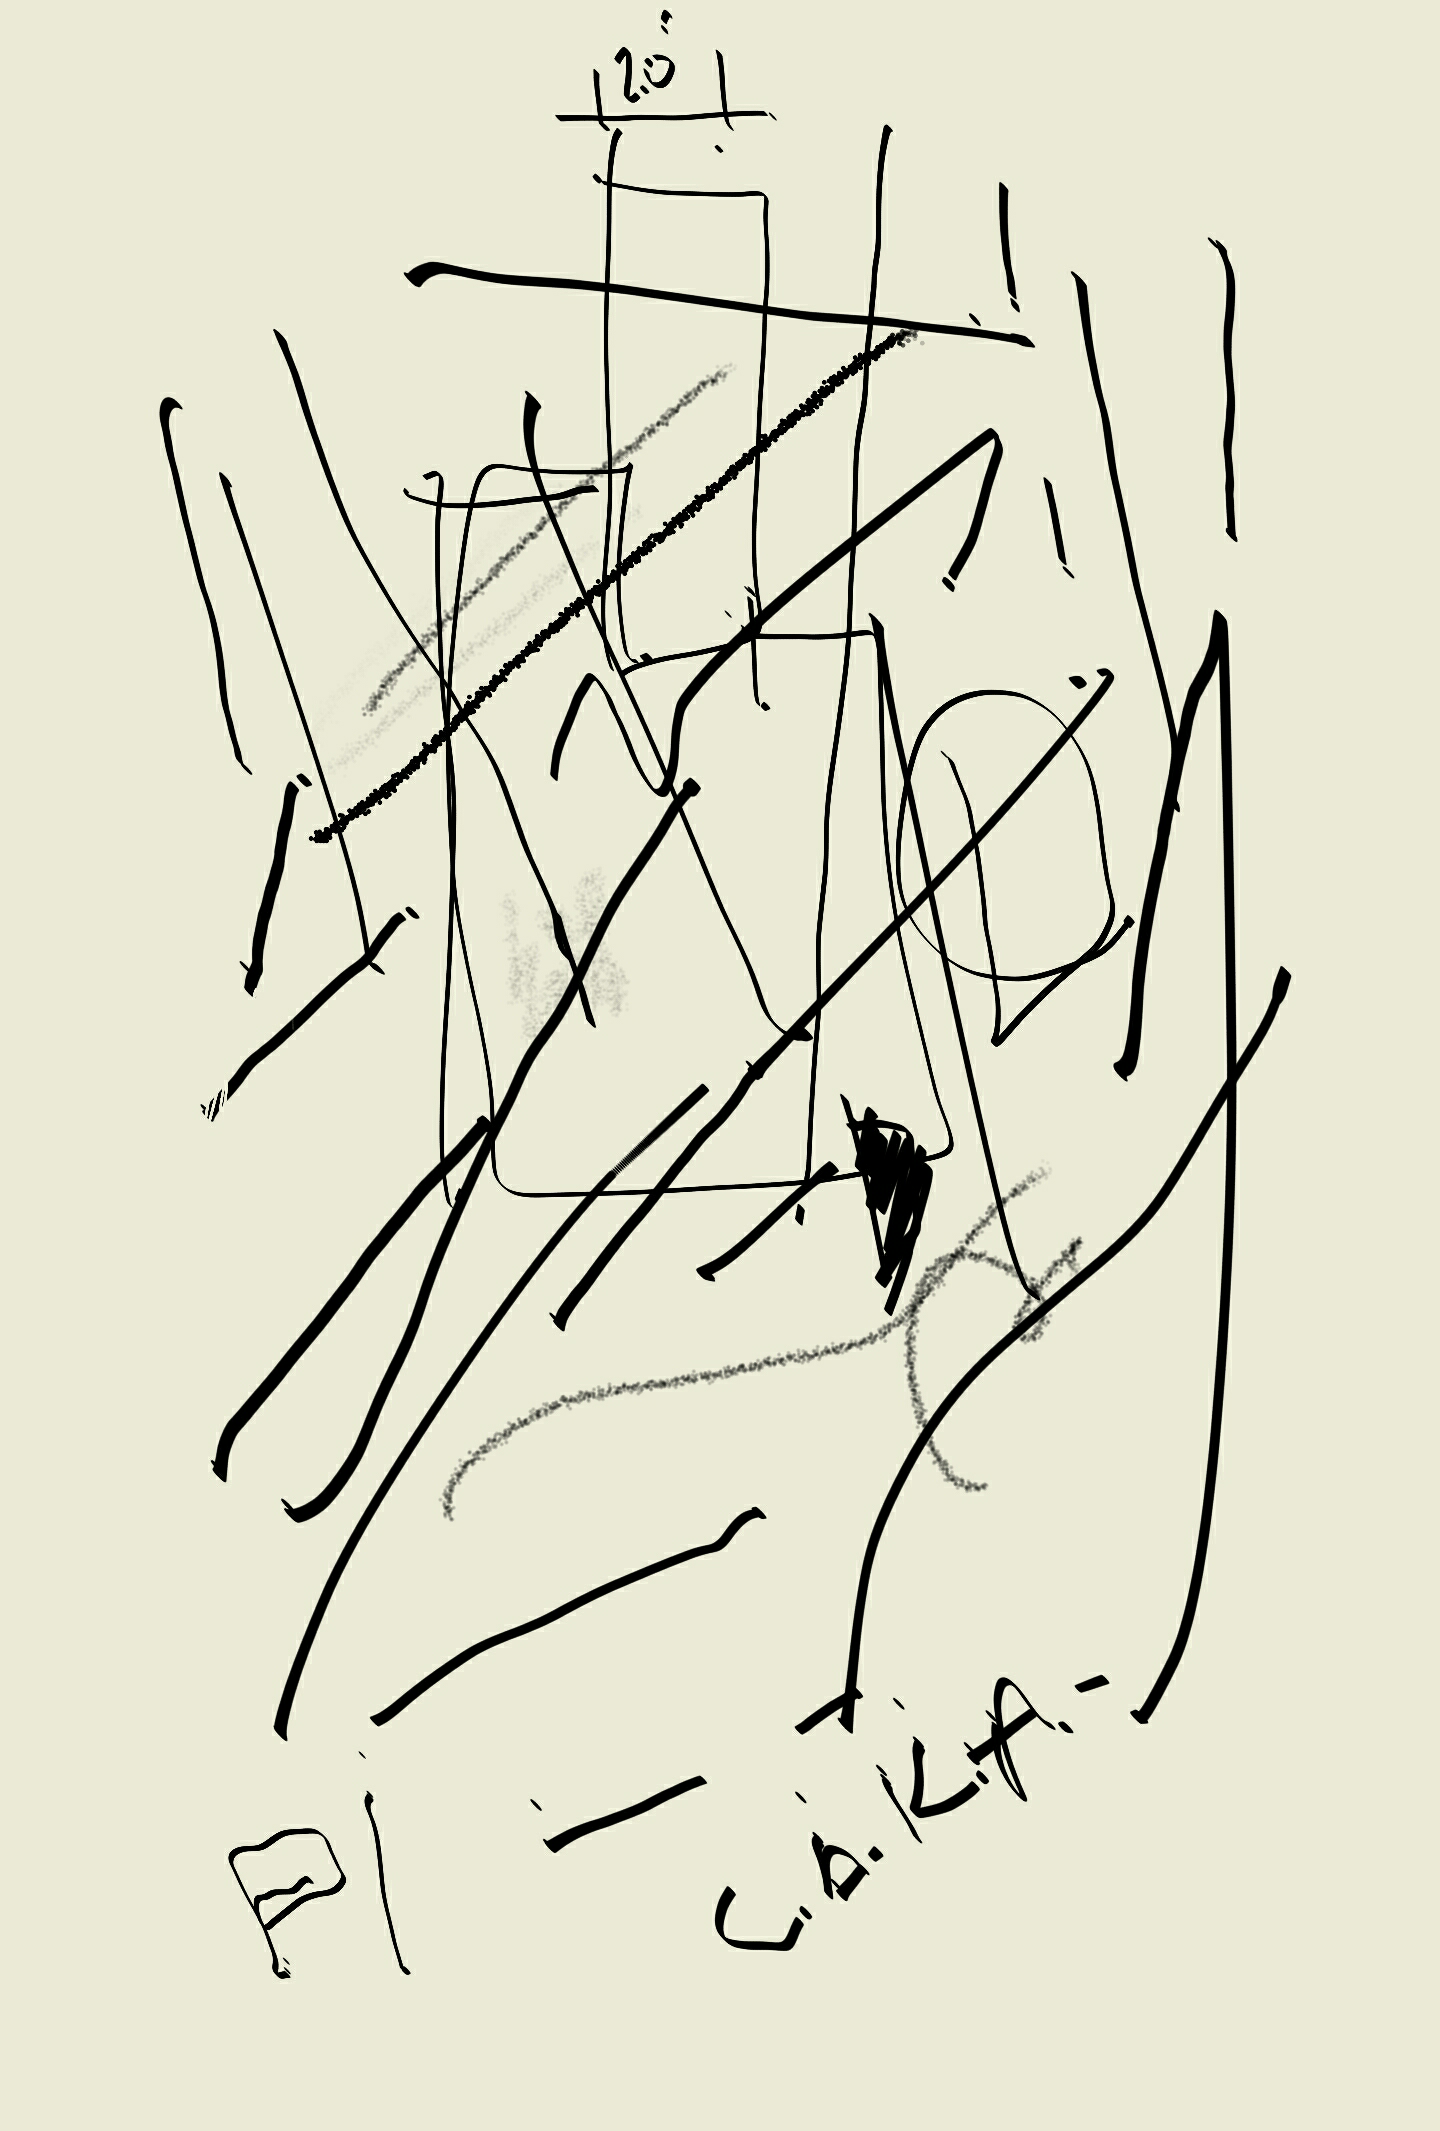 scribble scabble